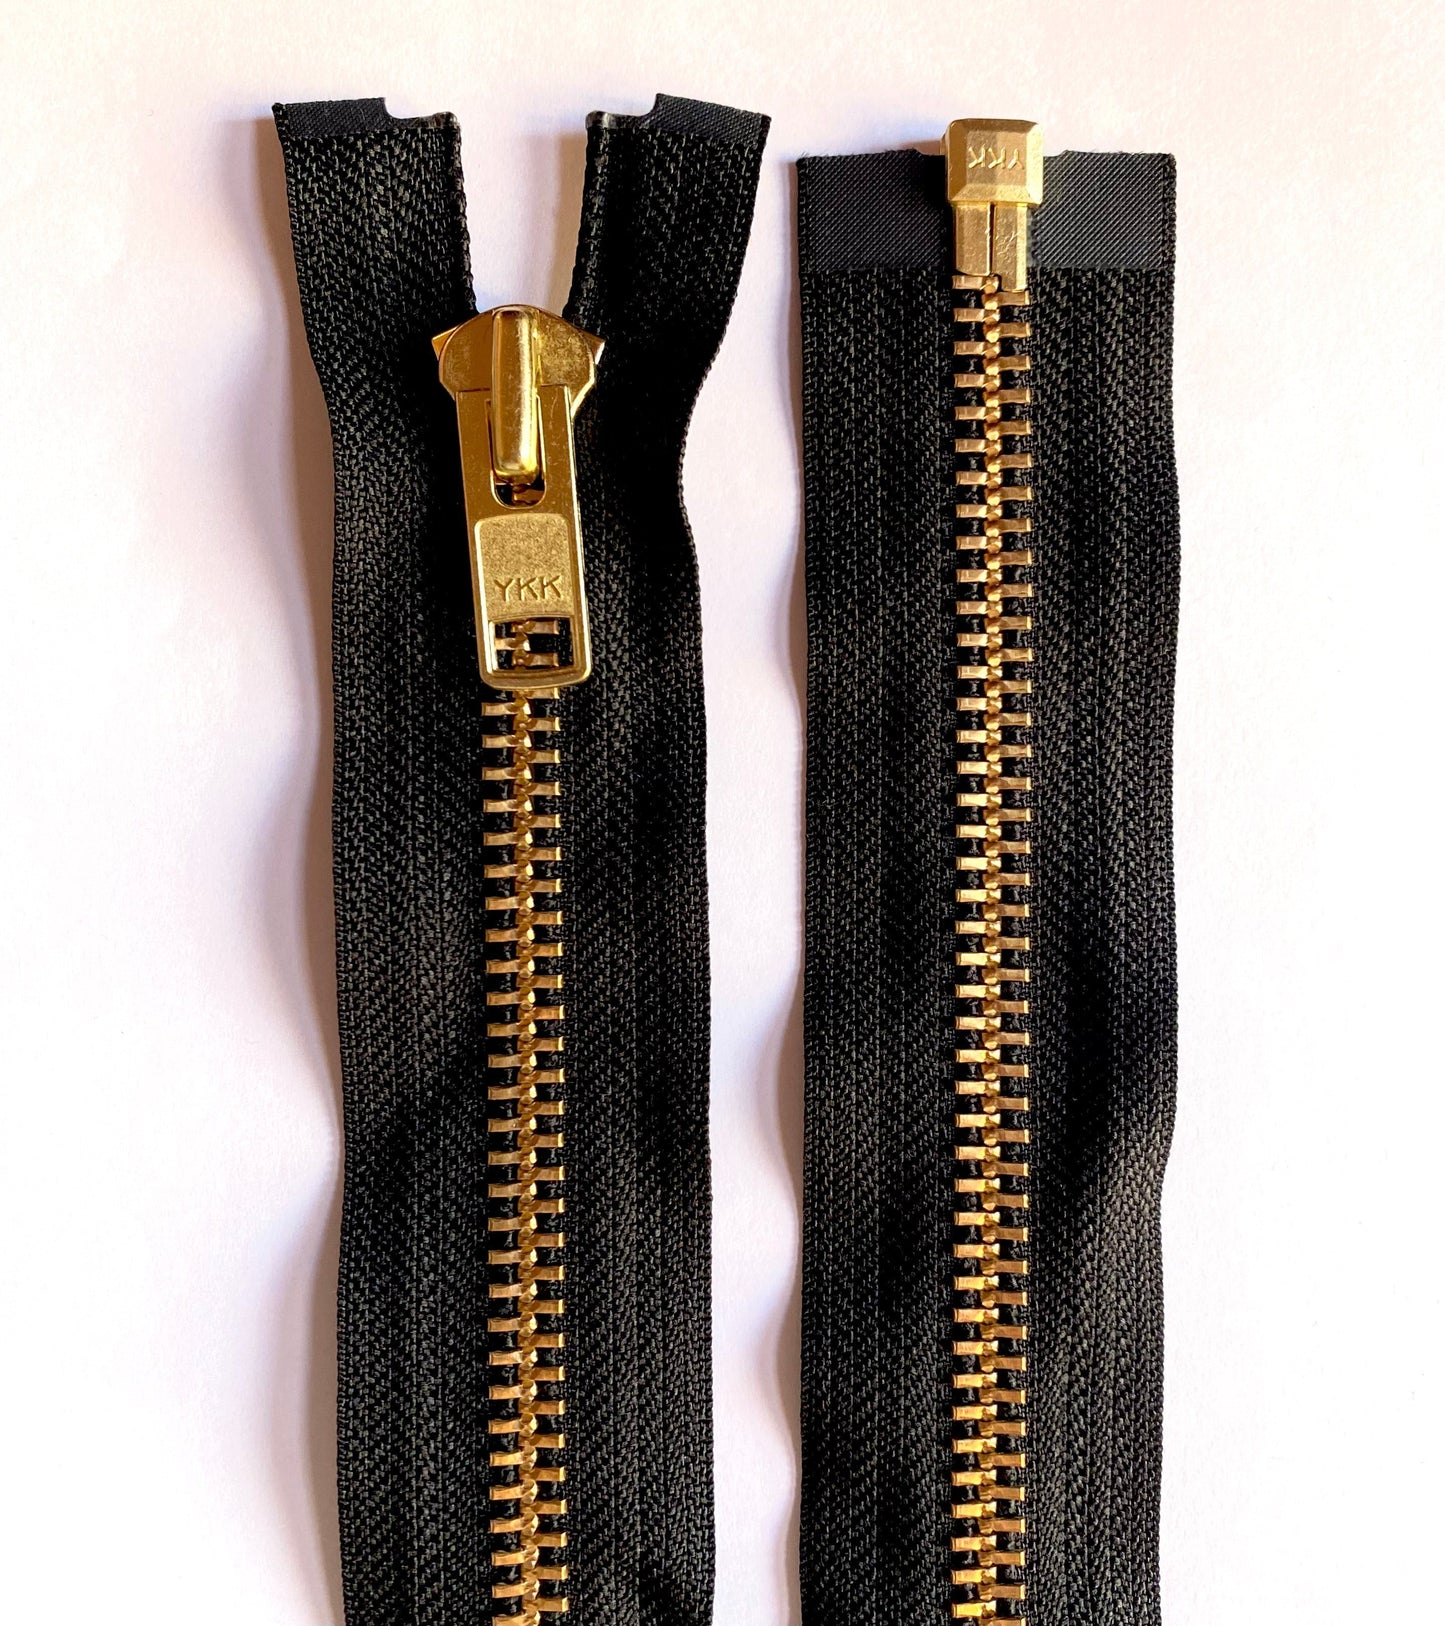 YKK metal zipper divisible 67 cm